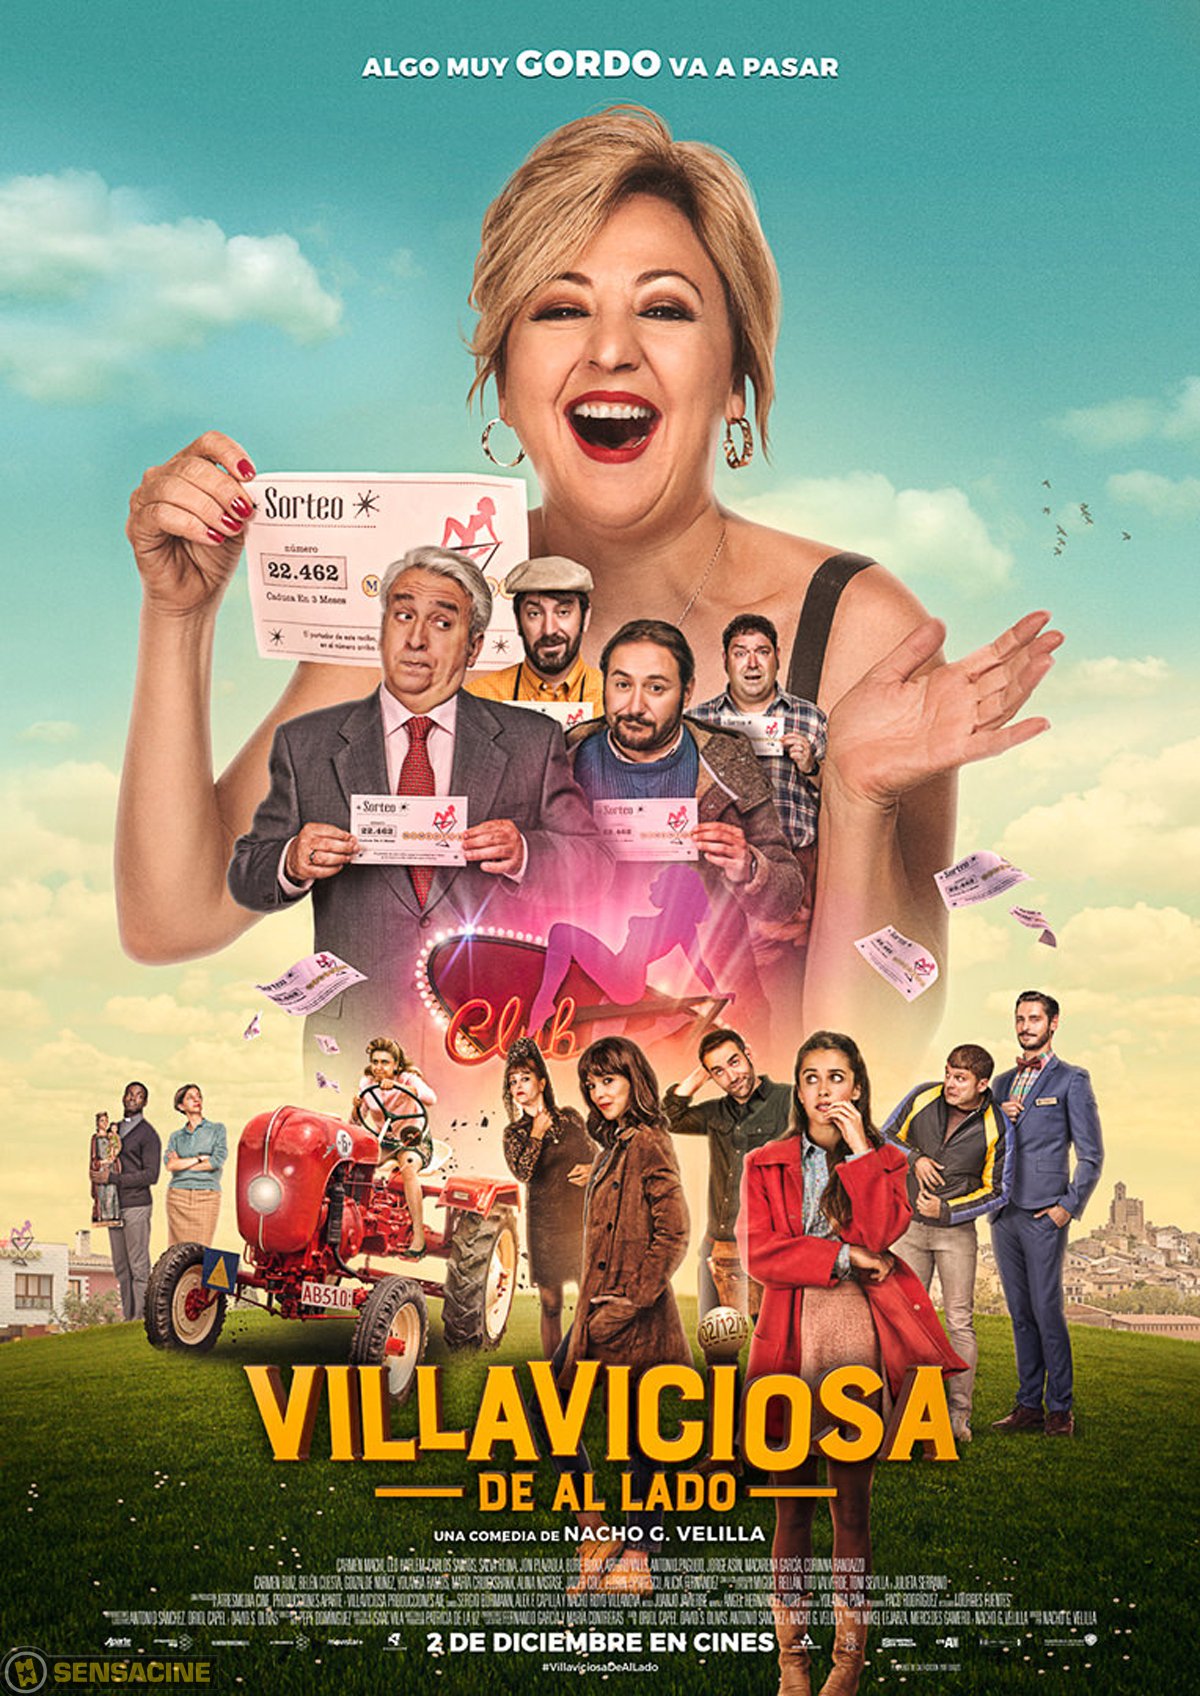 Villaviciosa de al lado - Película 2016 SensaCine.com